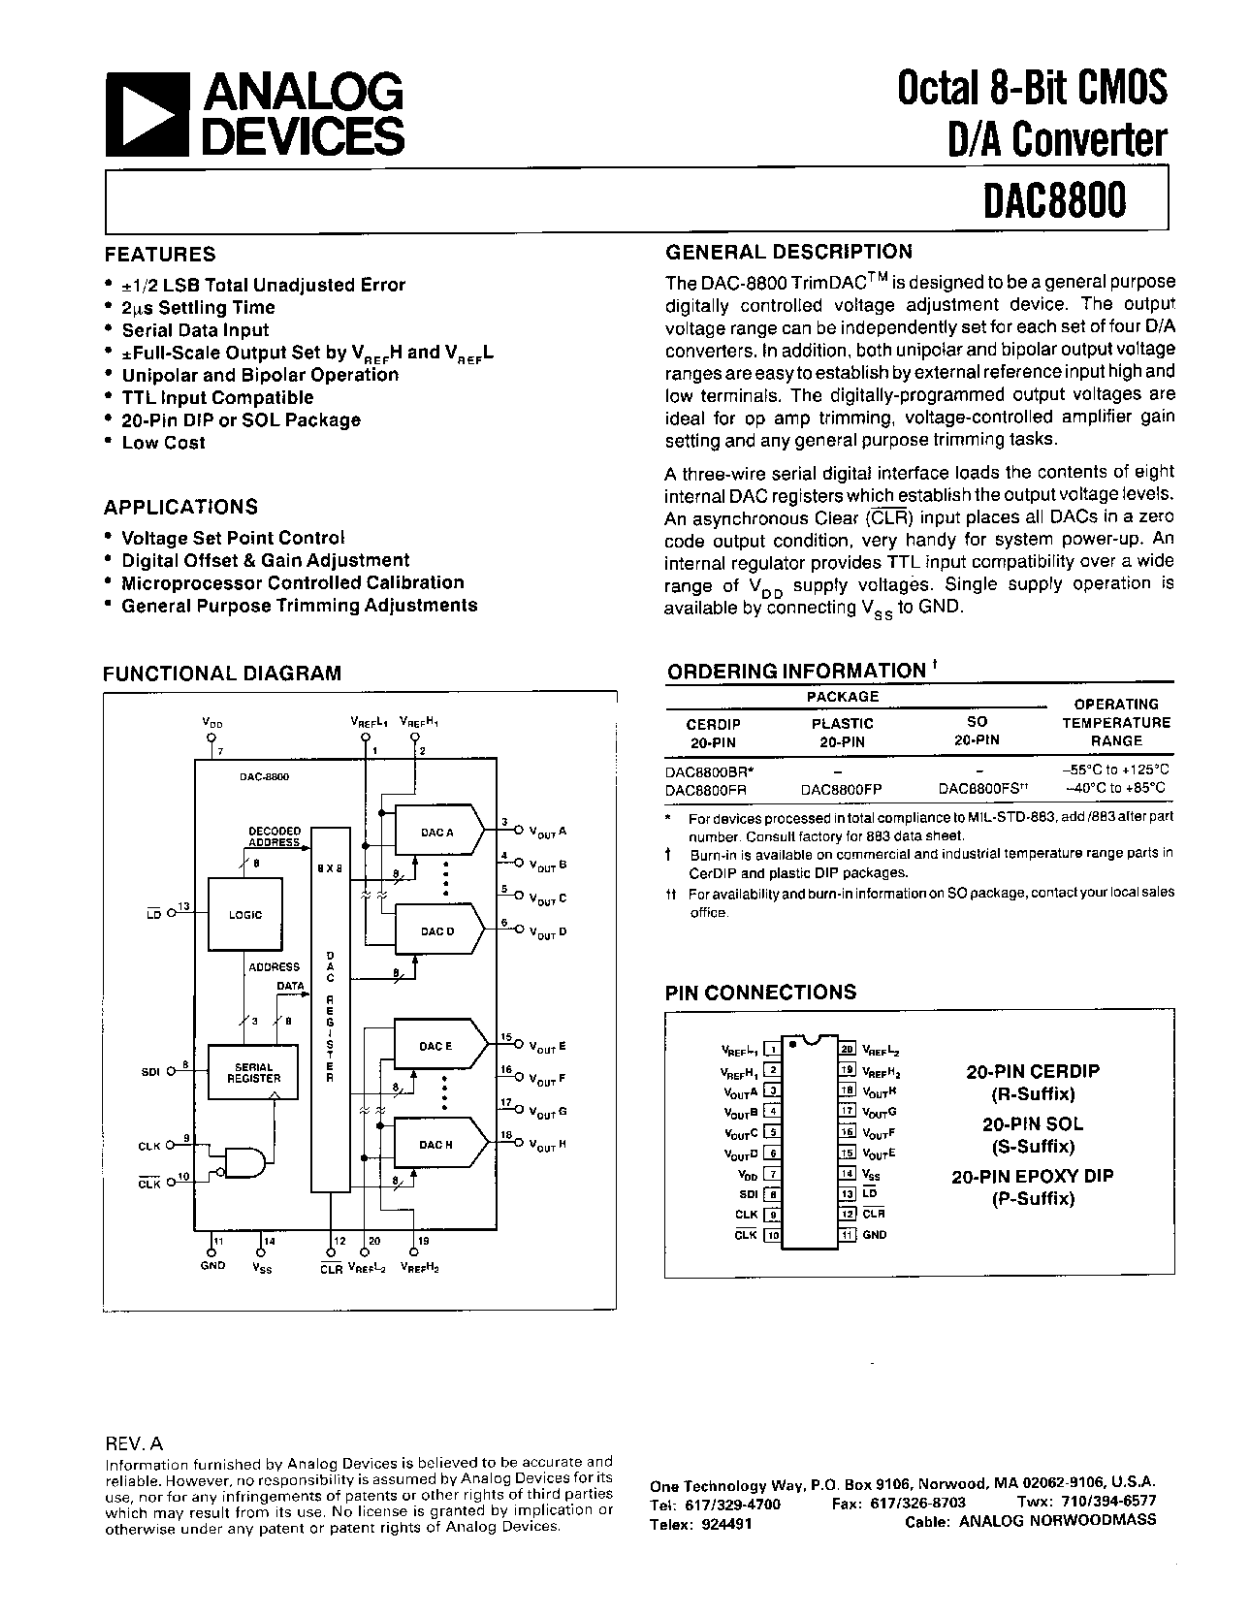 Analog Devices DAC8800FS, DAC8800FR, DAC8800FP, DAC8800BR Datasheet